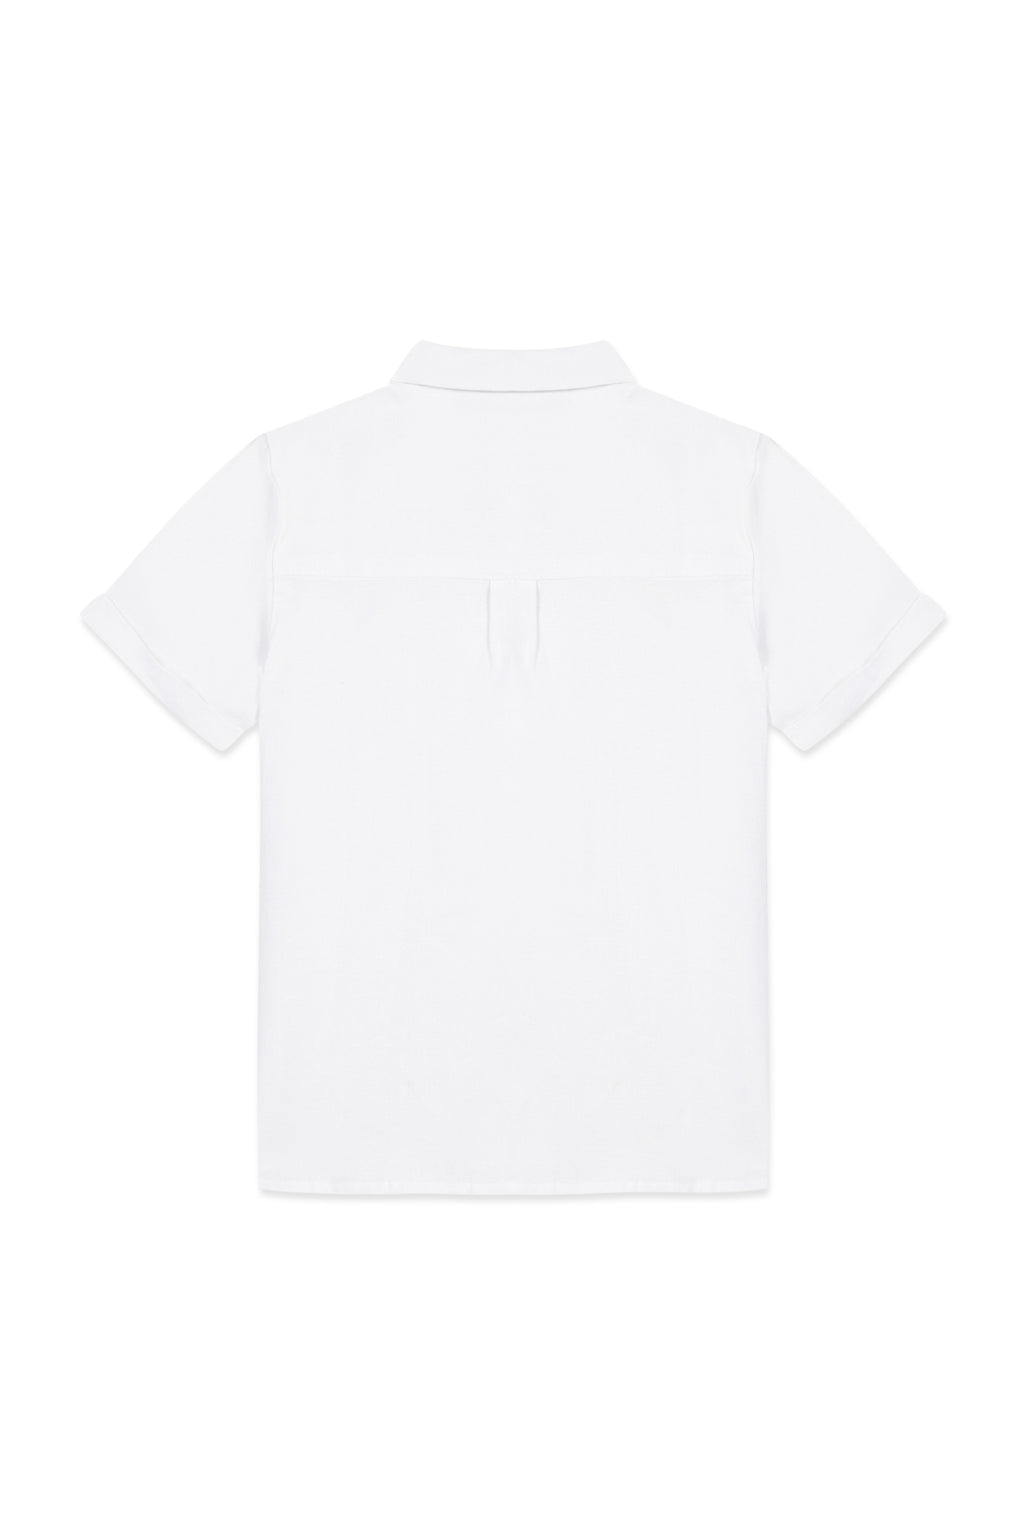 Shirt - Weiss kurze Ärmel